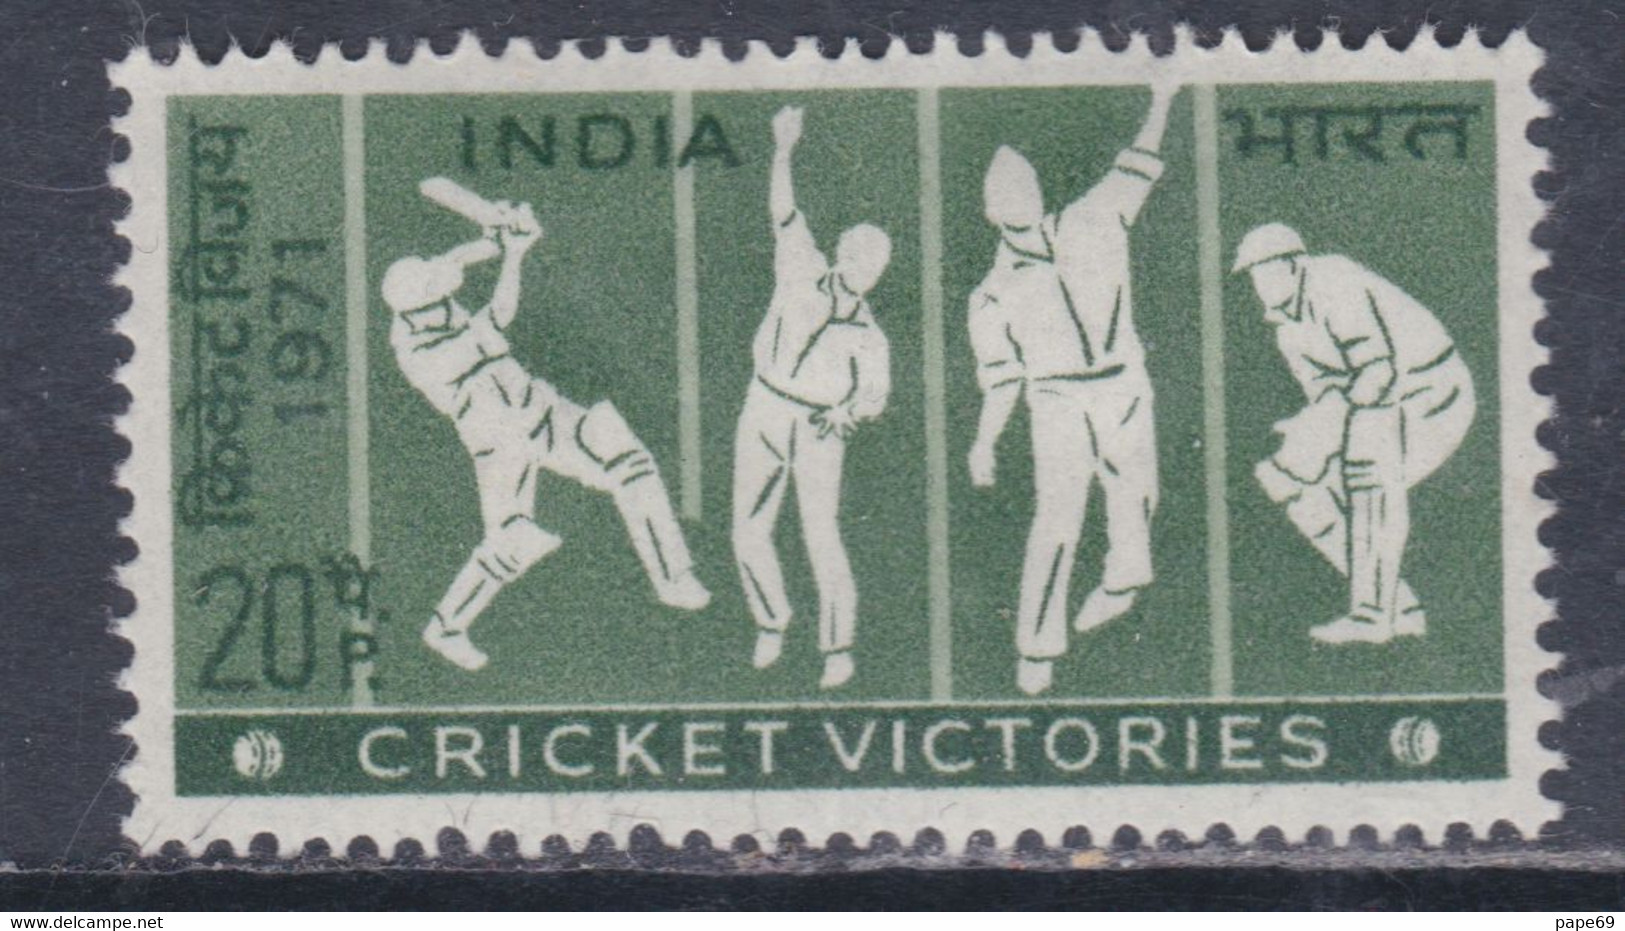 Inde N° 334 X Victoires Indiennes Au Cricket Trace De Charnière Sinon TB - Ungebraucht